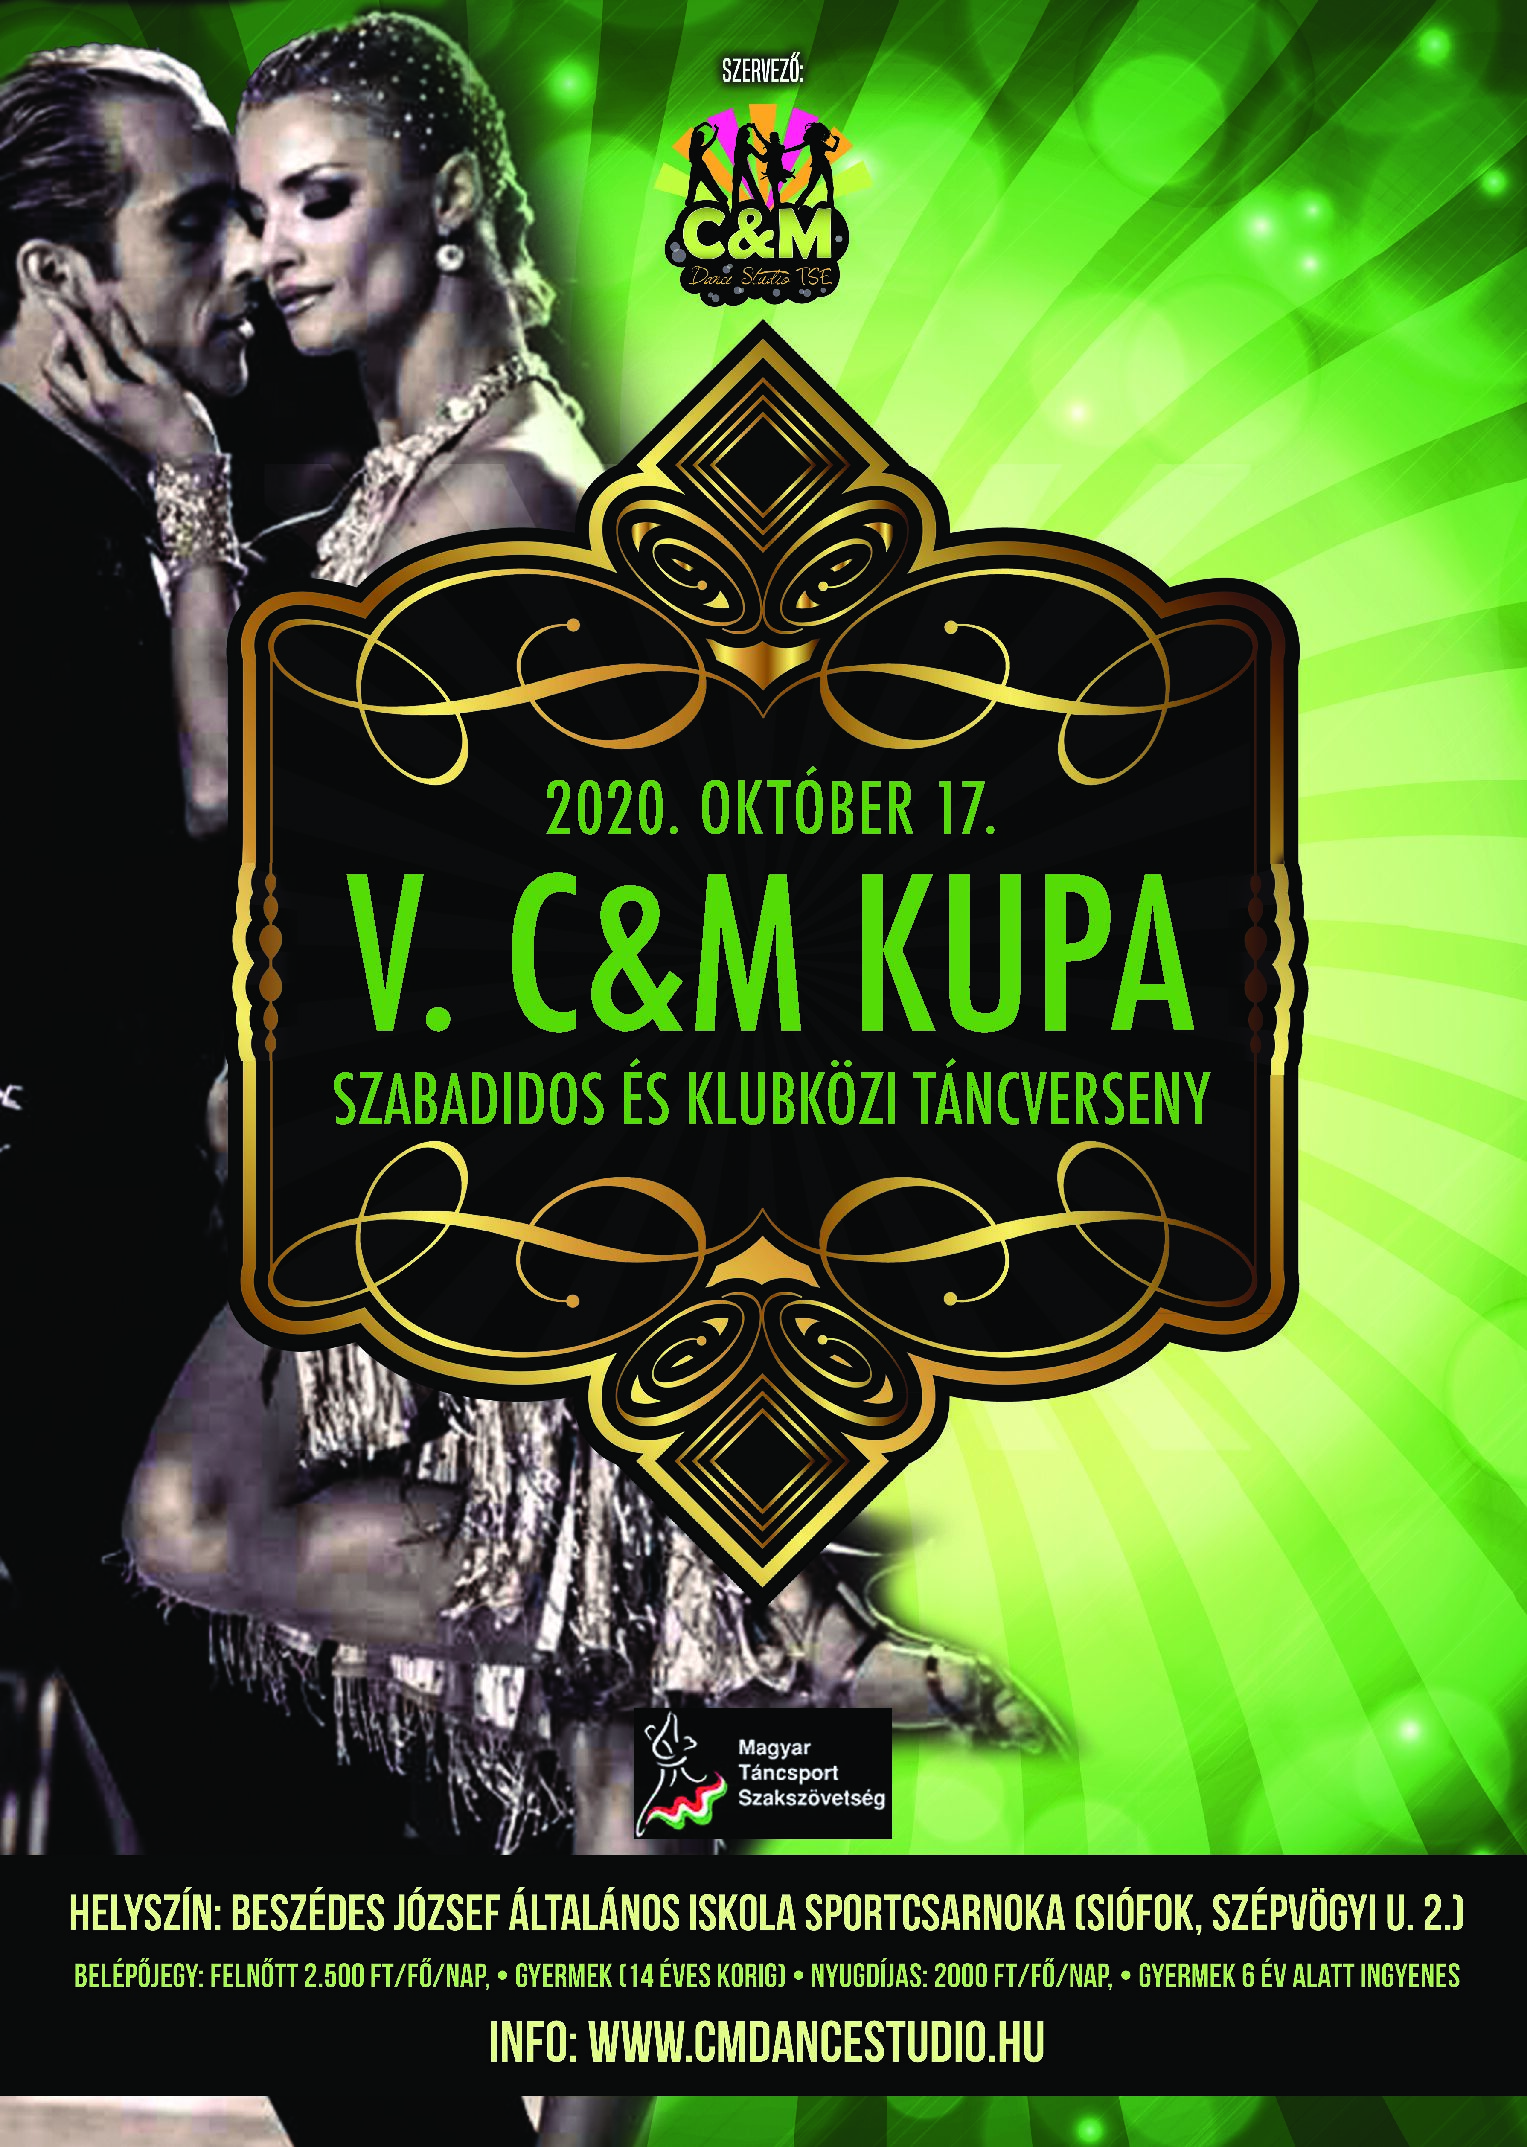 V. C&M Kupa